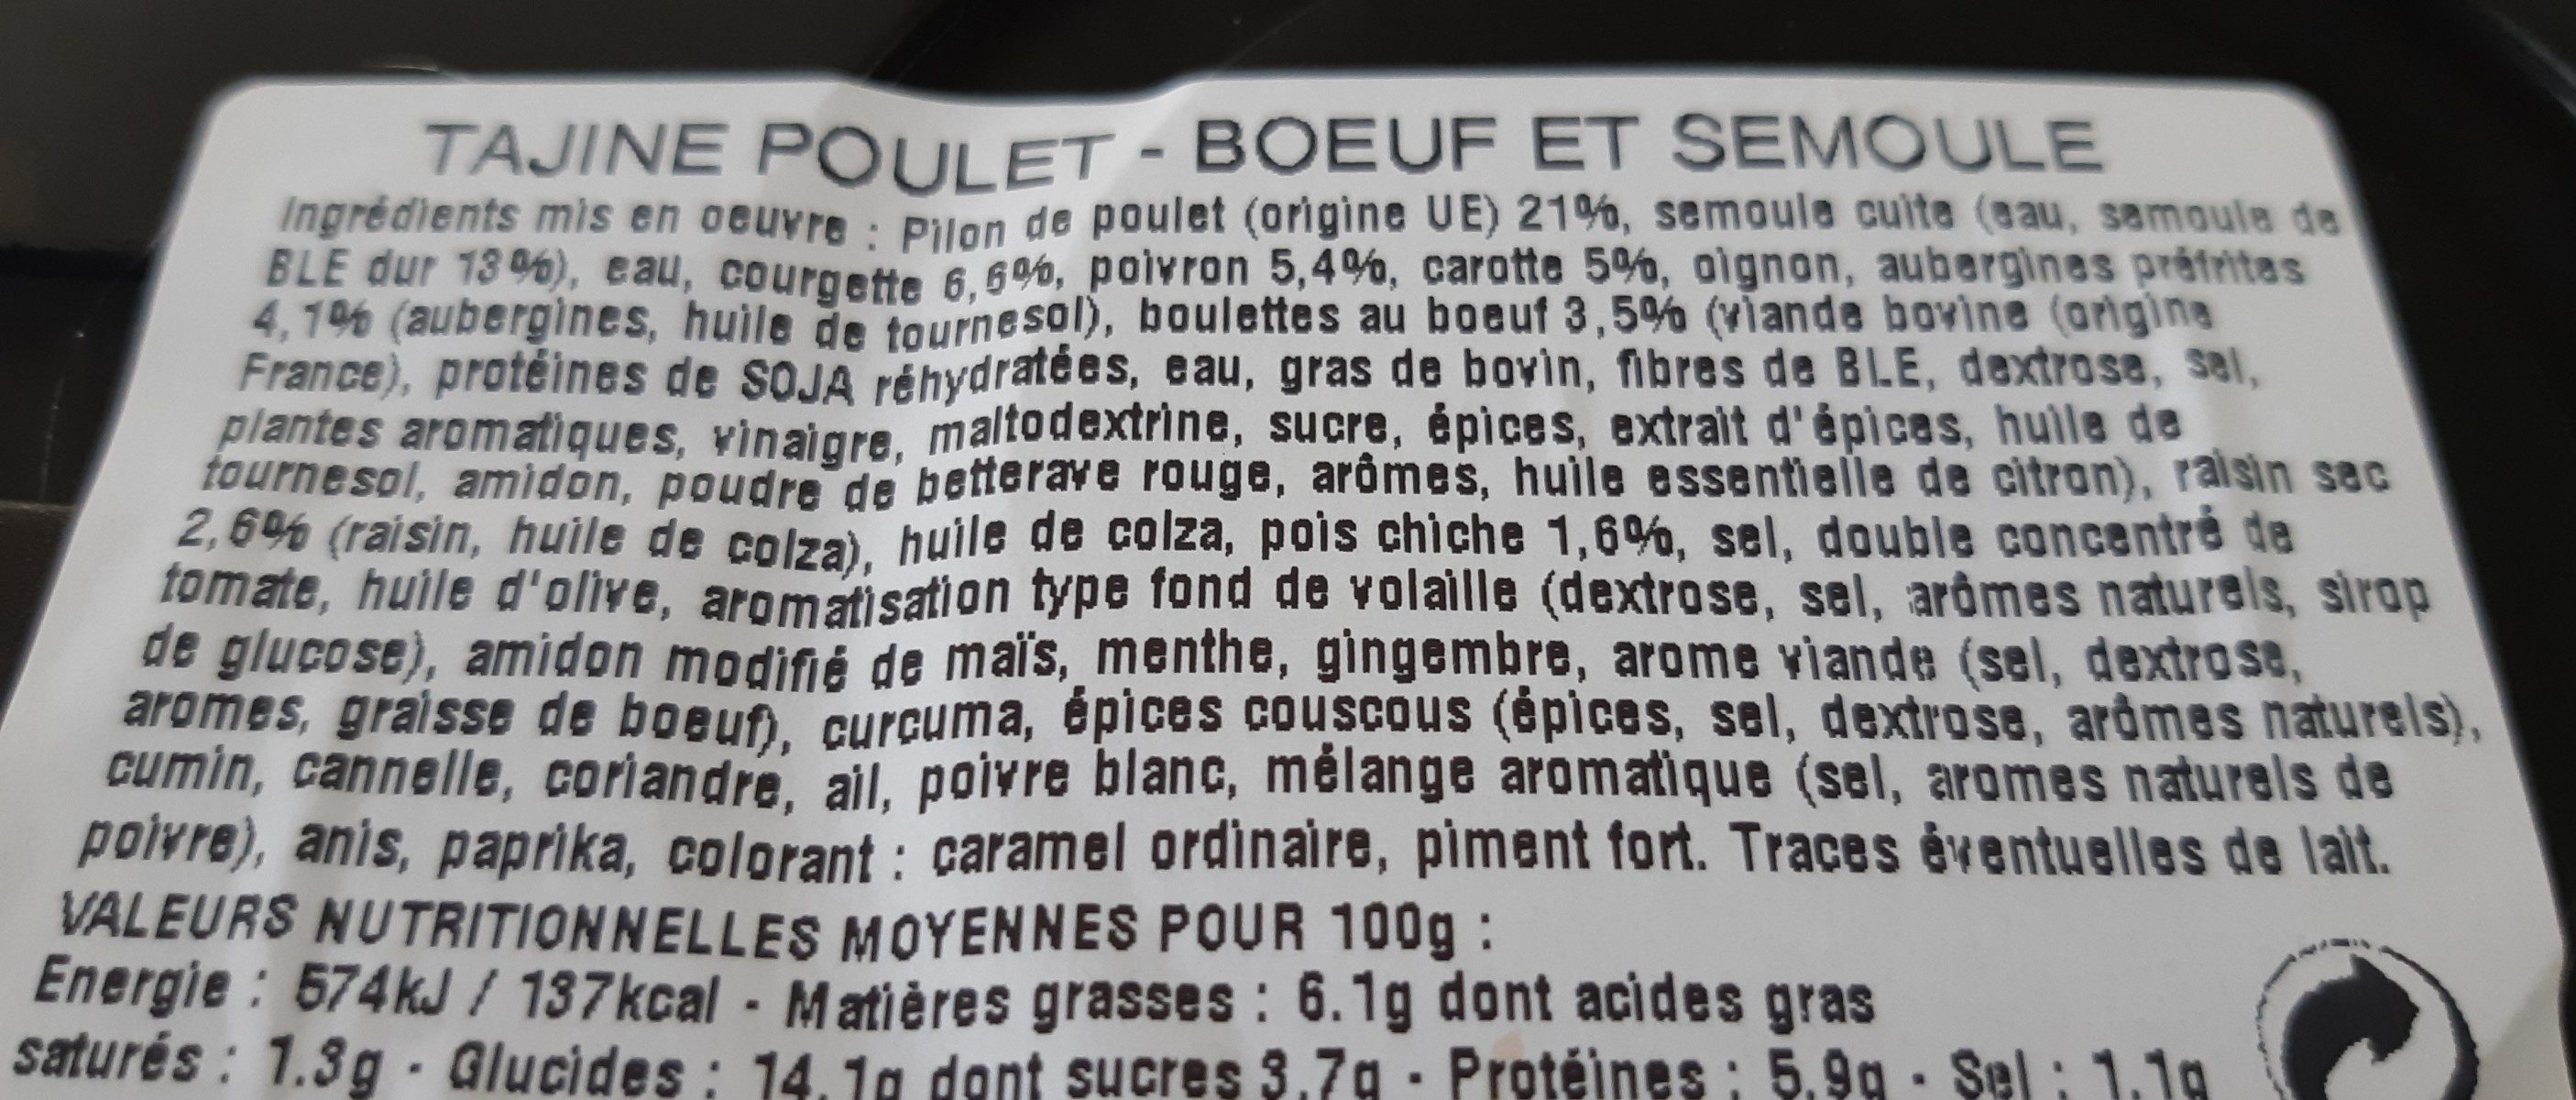 tajine poulet boeuf et semoule - Ingredients - fr